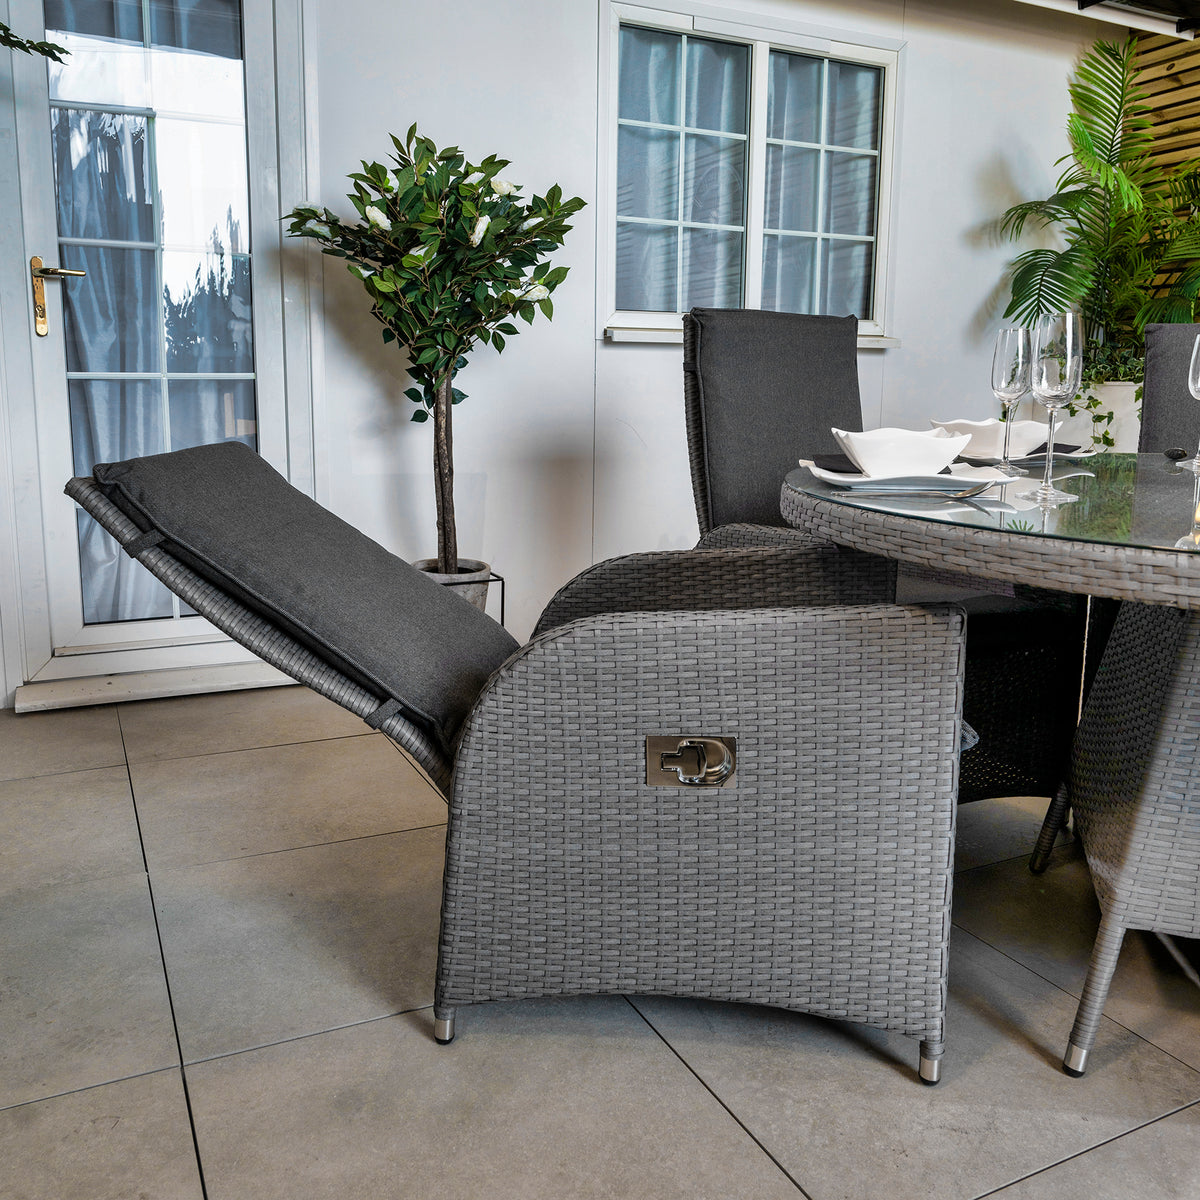 Bracken Outdoors 6 Seat Round Dakota Rattan Garden Furniture Set 1.5m with Recliner Chairs